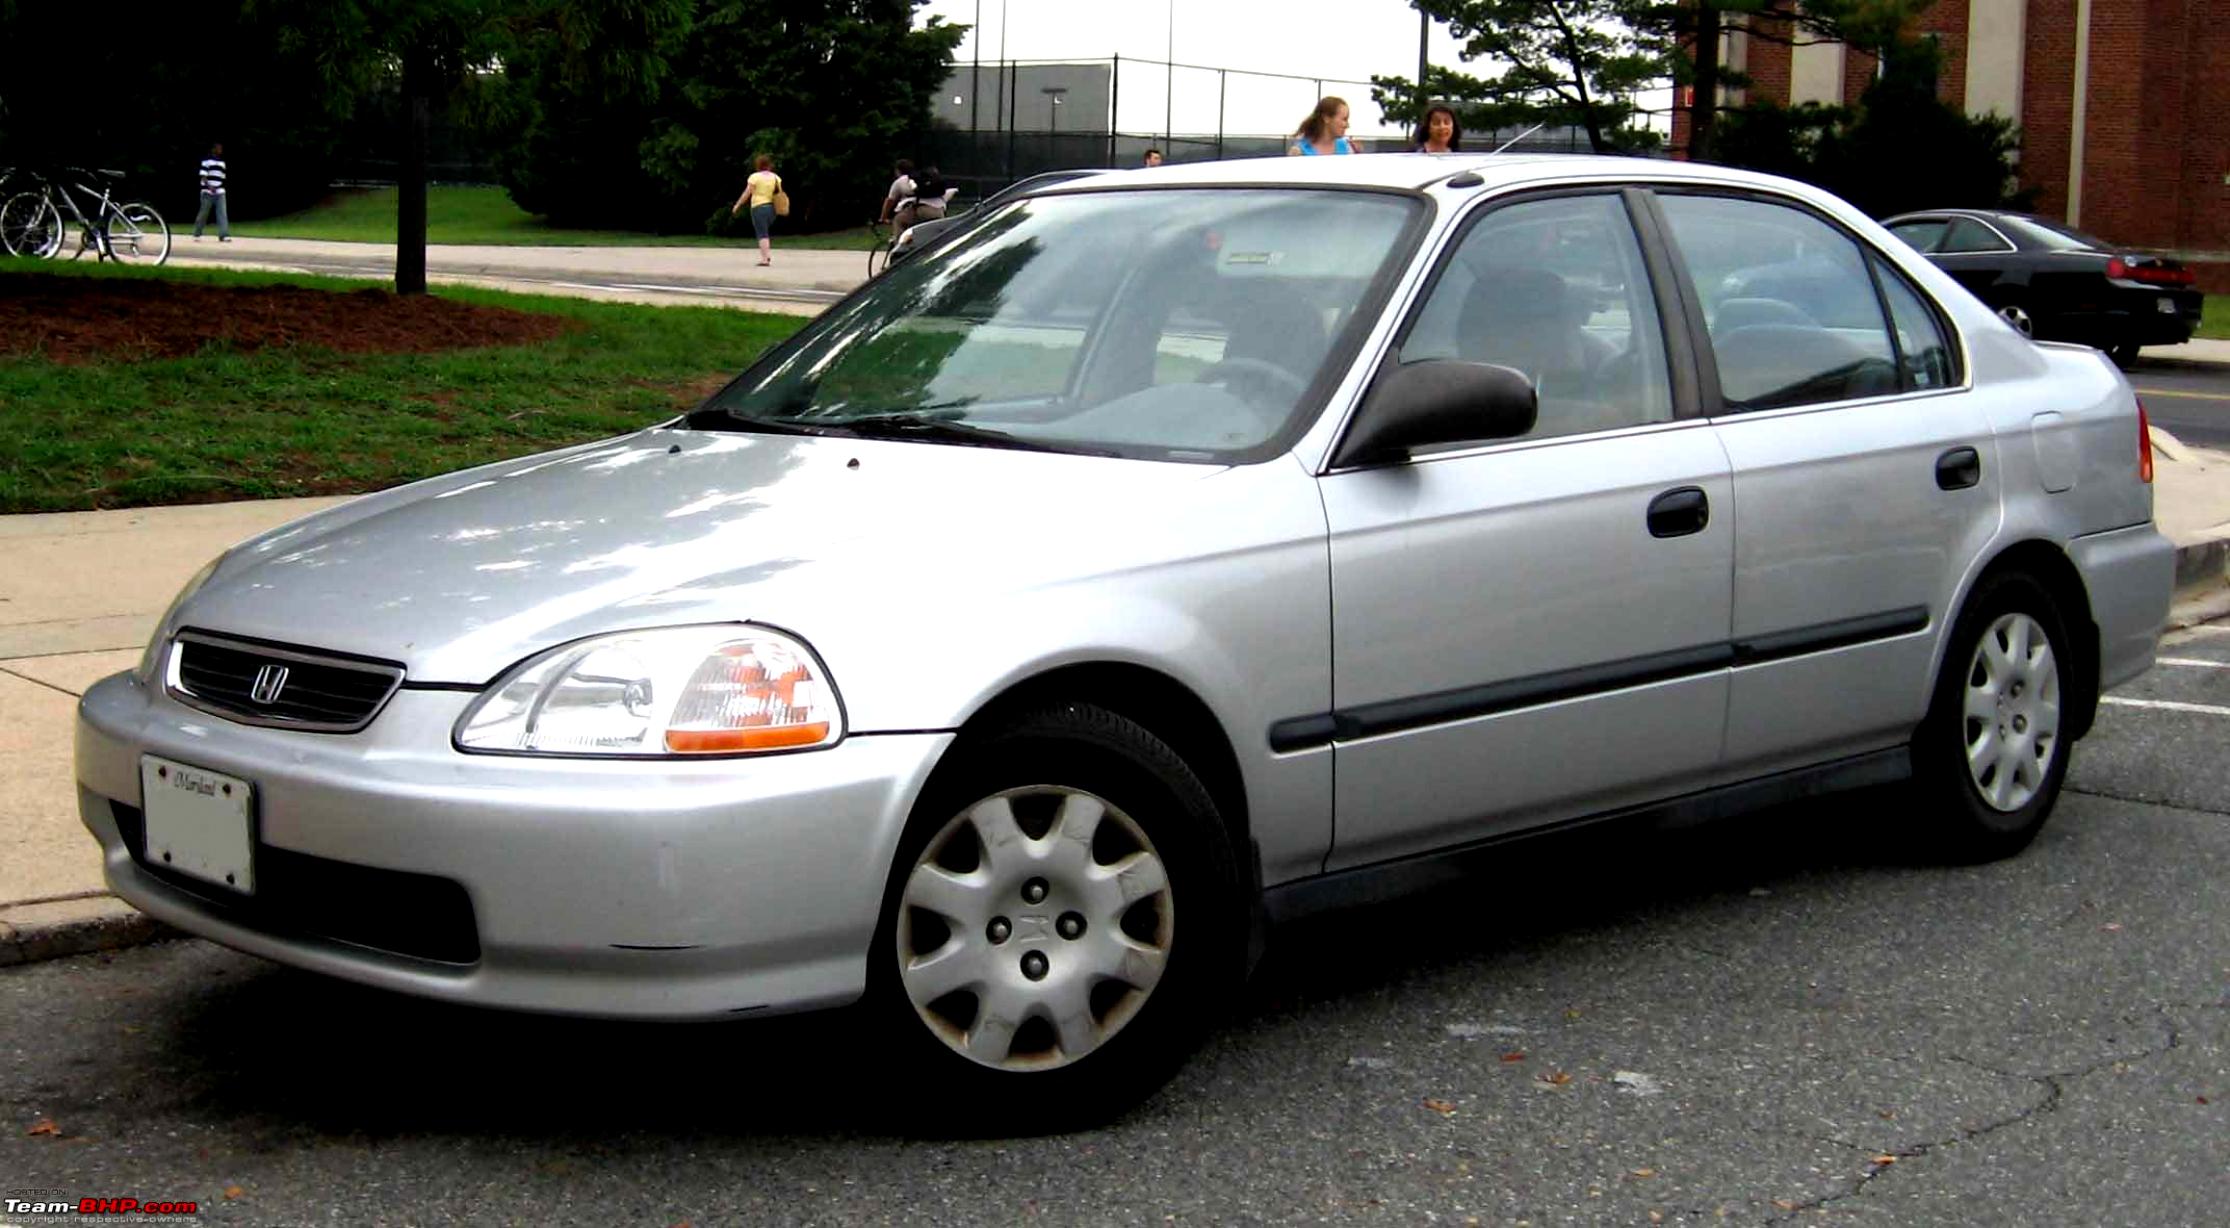 Honda 96 год. Honda Civic 1998. Honda Civic 1998 седан. Honda Civic 98 седан. Хонда Цивик 1998 седан.